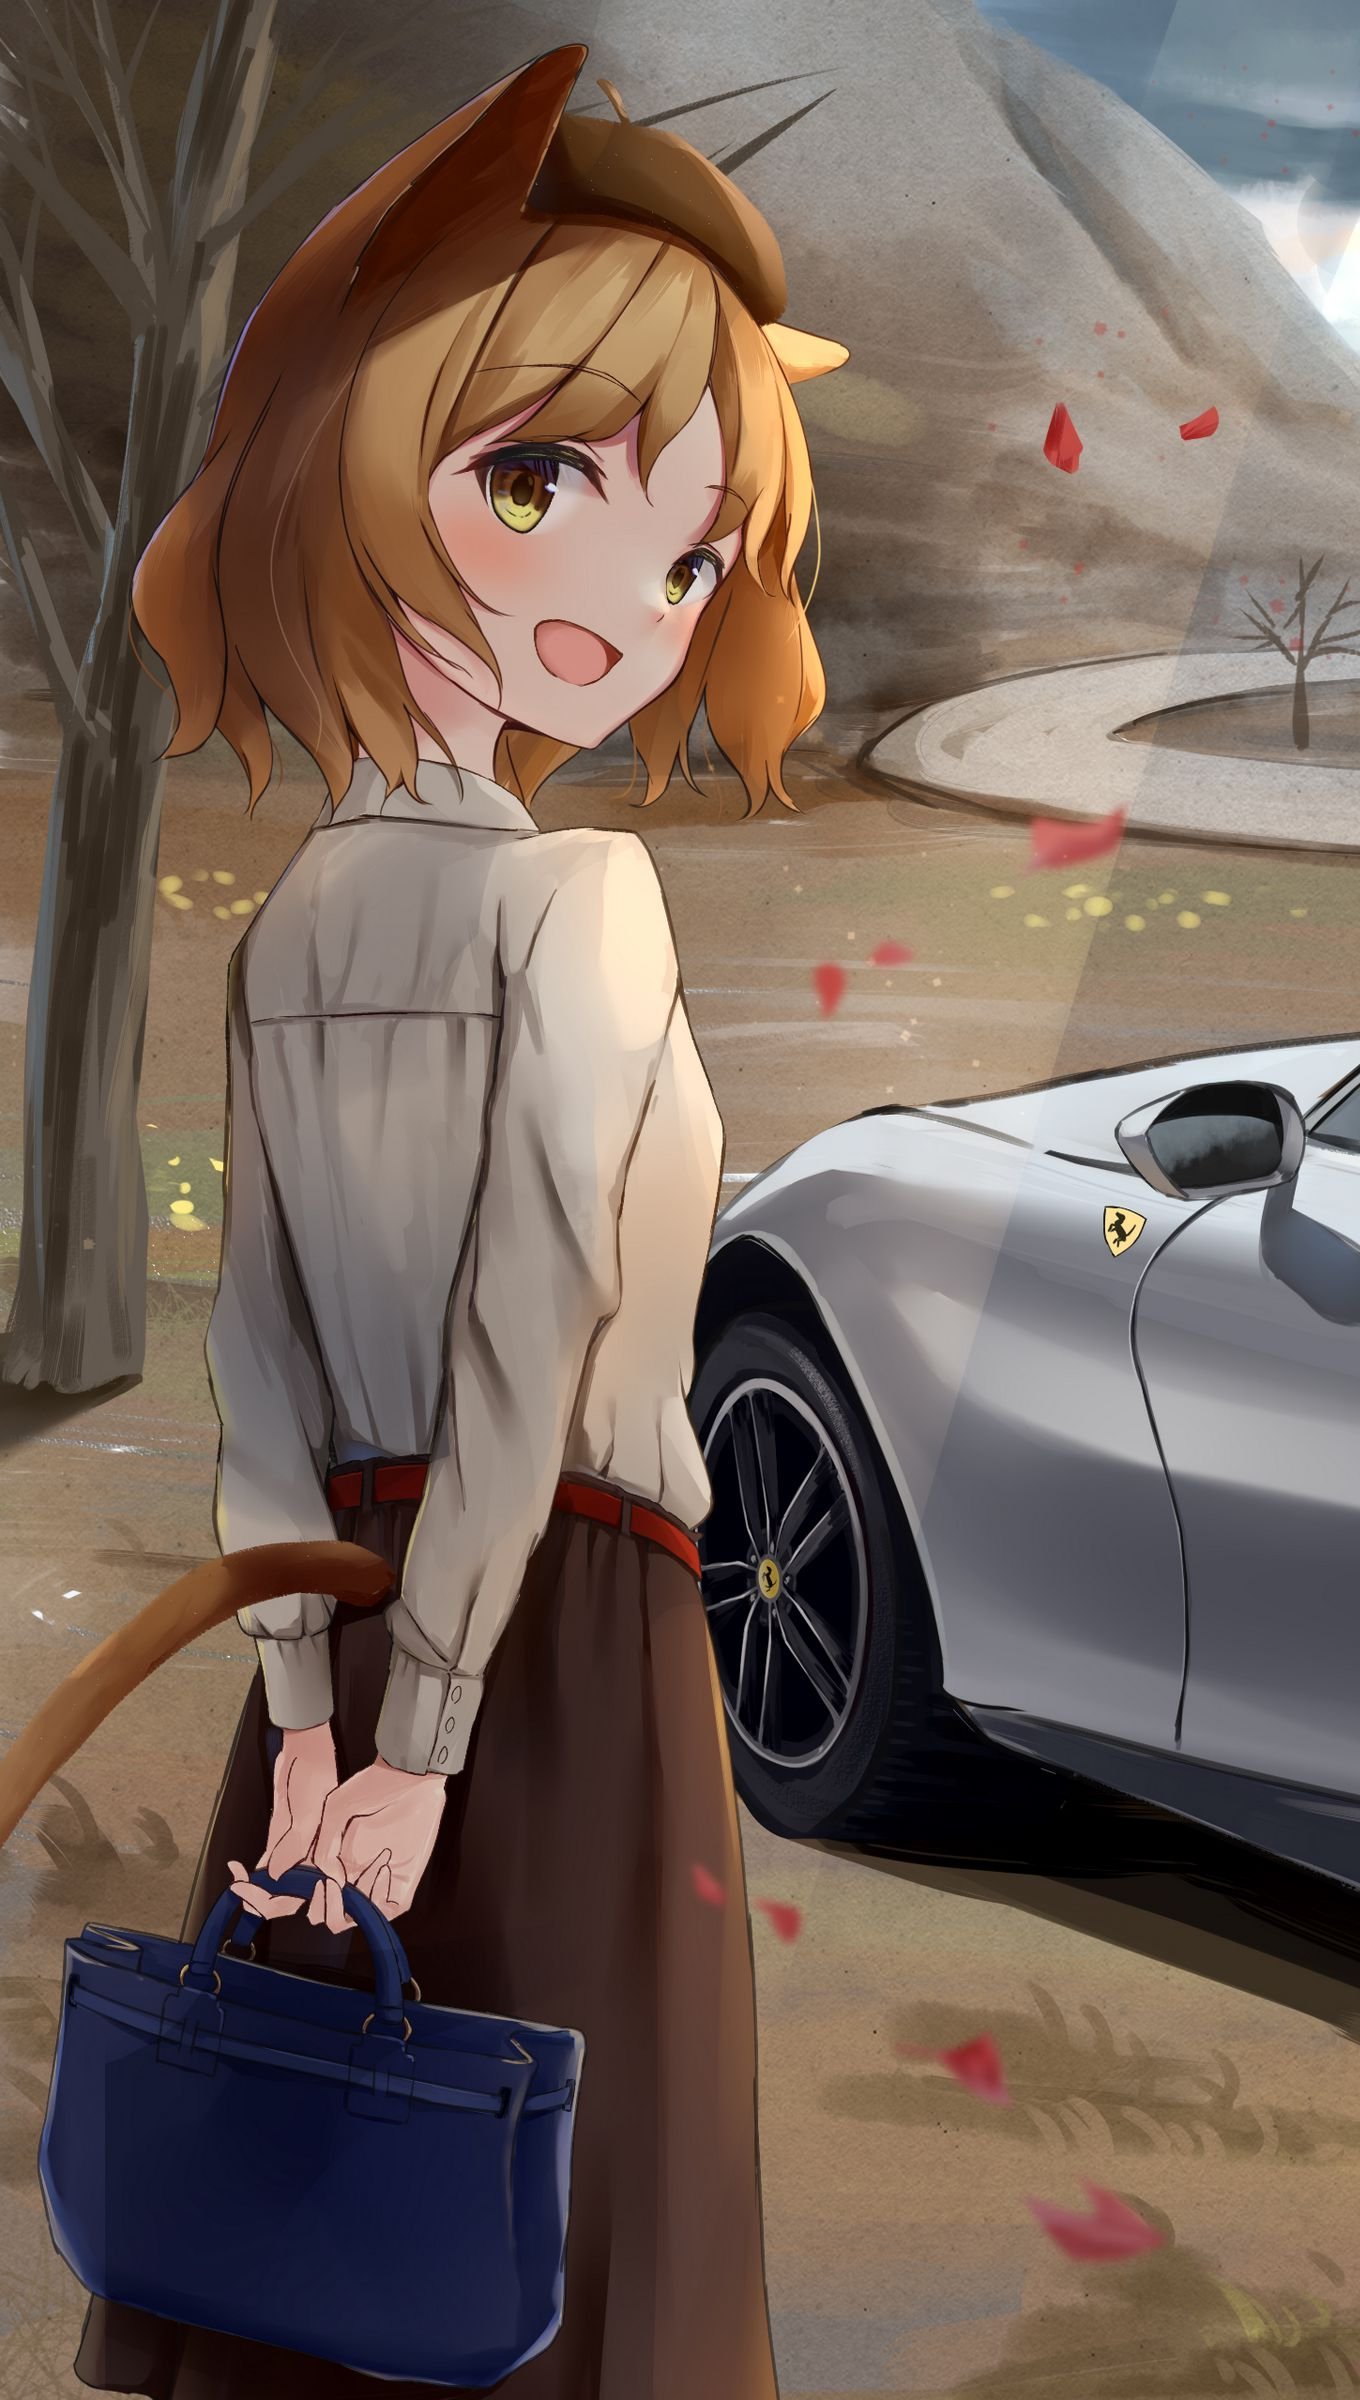 Fondos de pantalla Anime Chica neko con carro Vertical